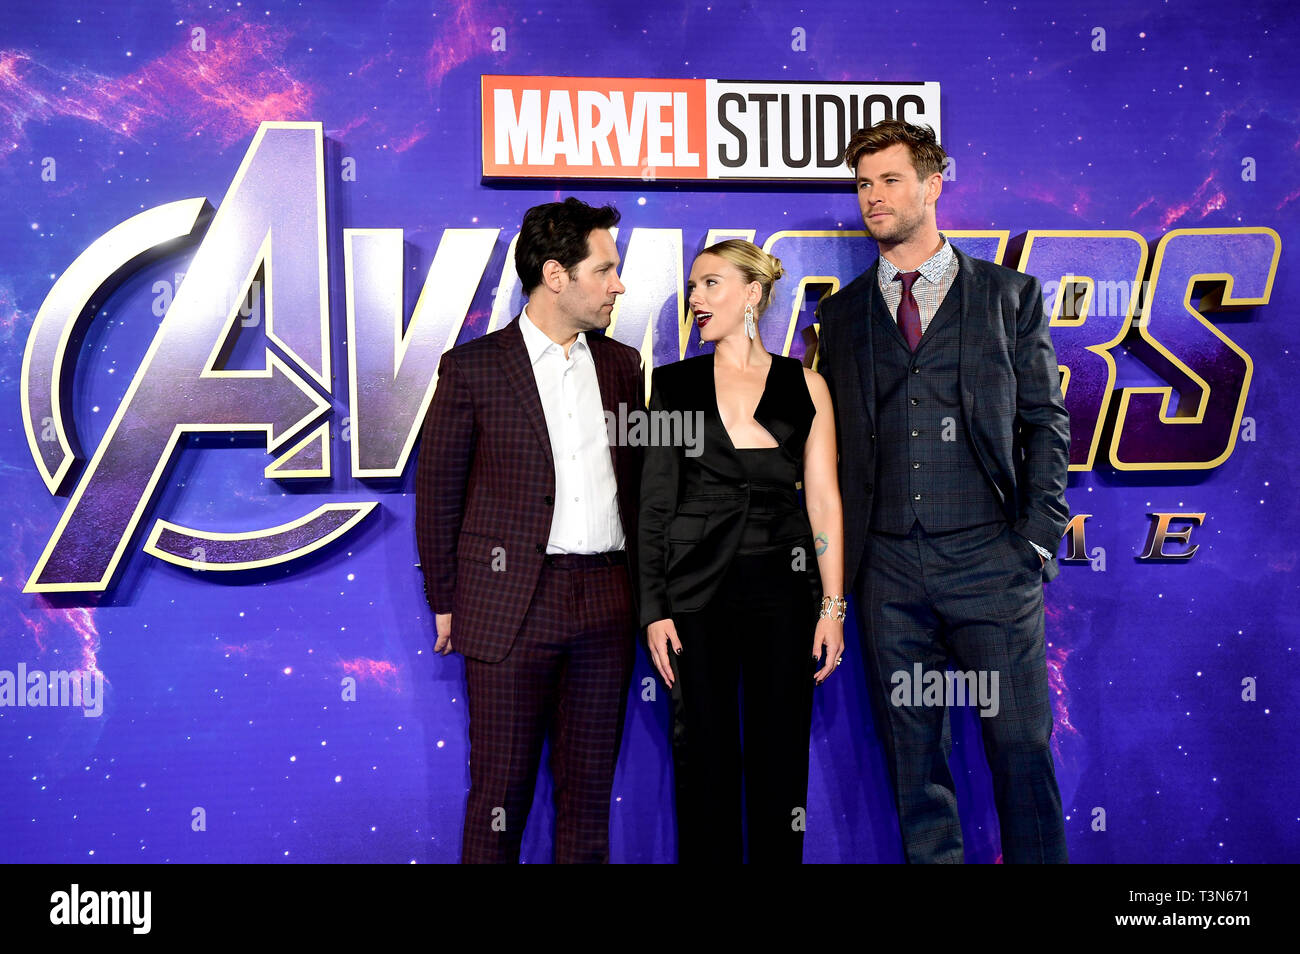 Paul Rudd (left), Scarlett Johansson and Chris Hemsworth attending the Avengers: Endgame fan event held at Picturehouse Central, London. Stock Photo